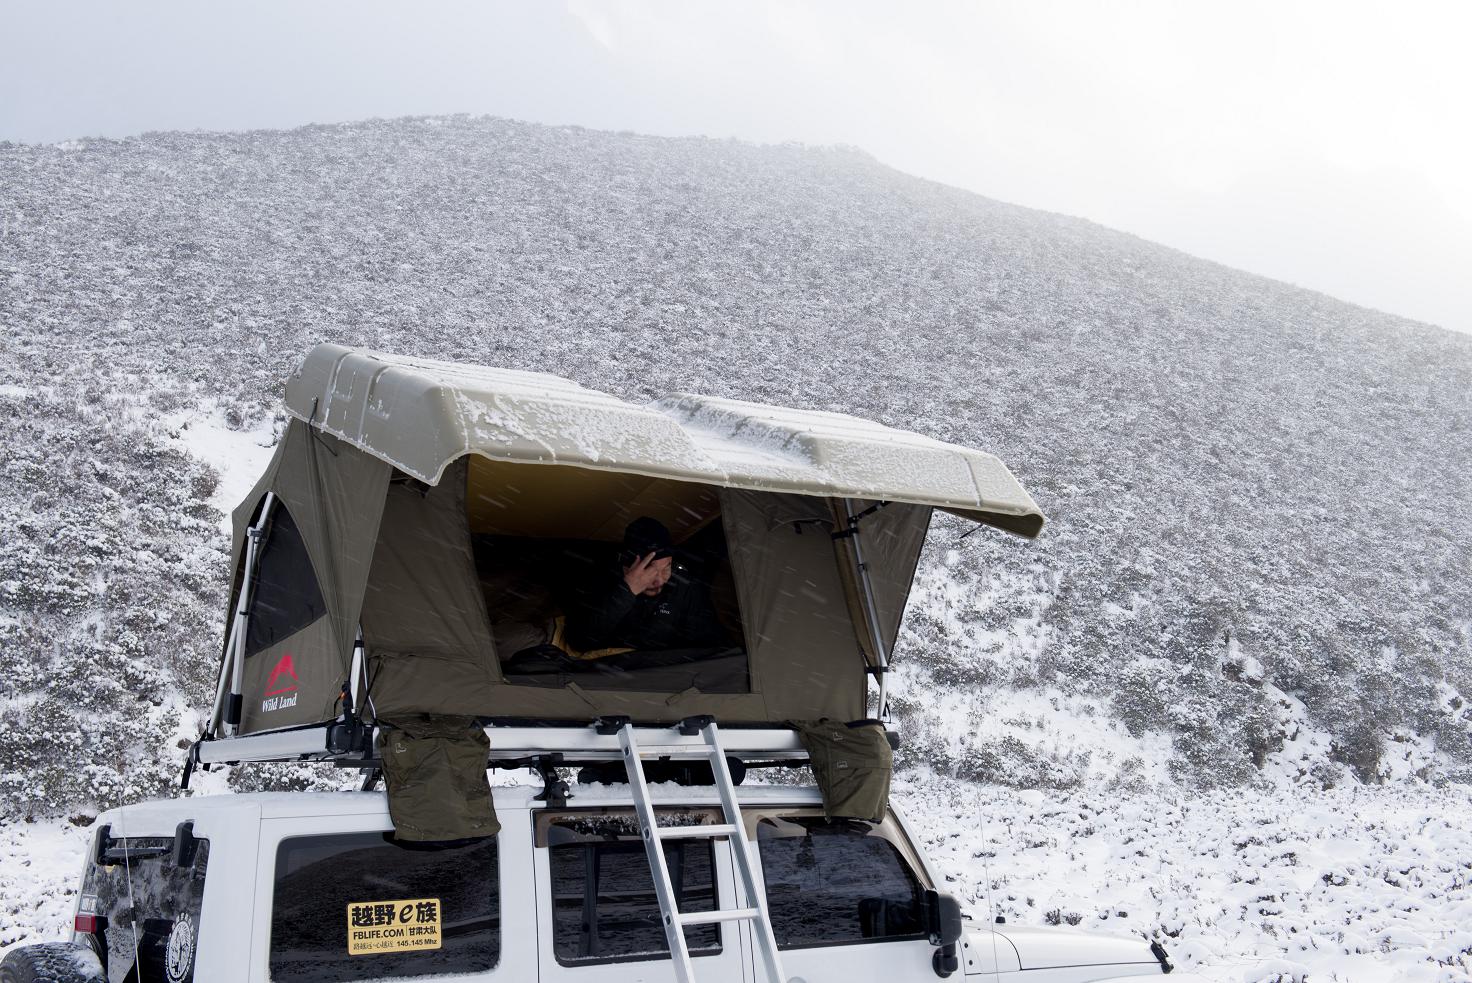 Палатка складная Pathfinder II (на крышу автомобиля)